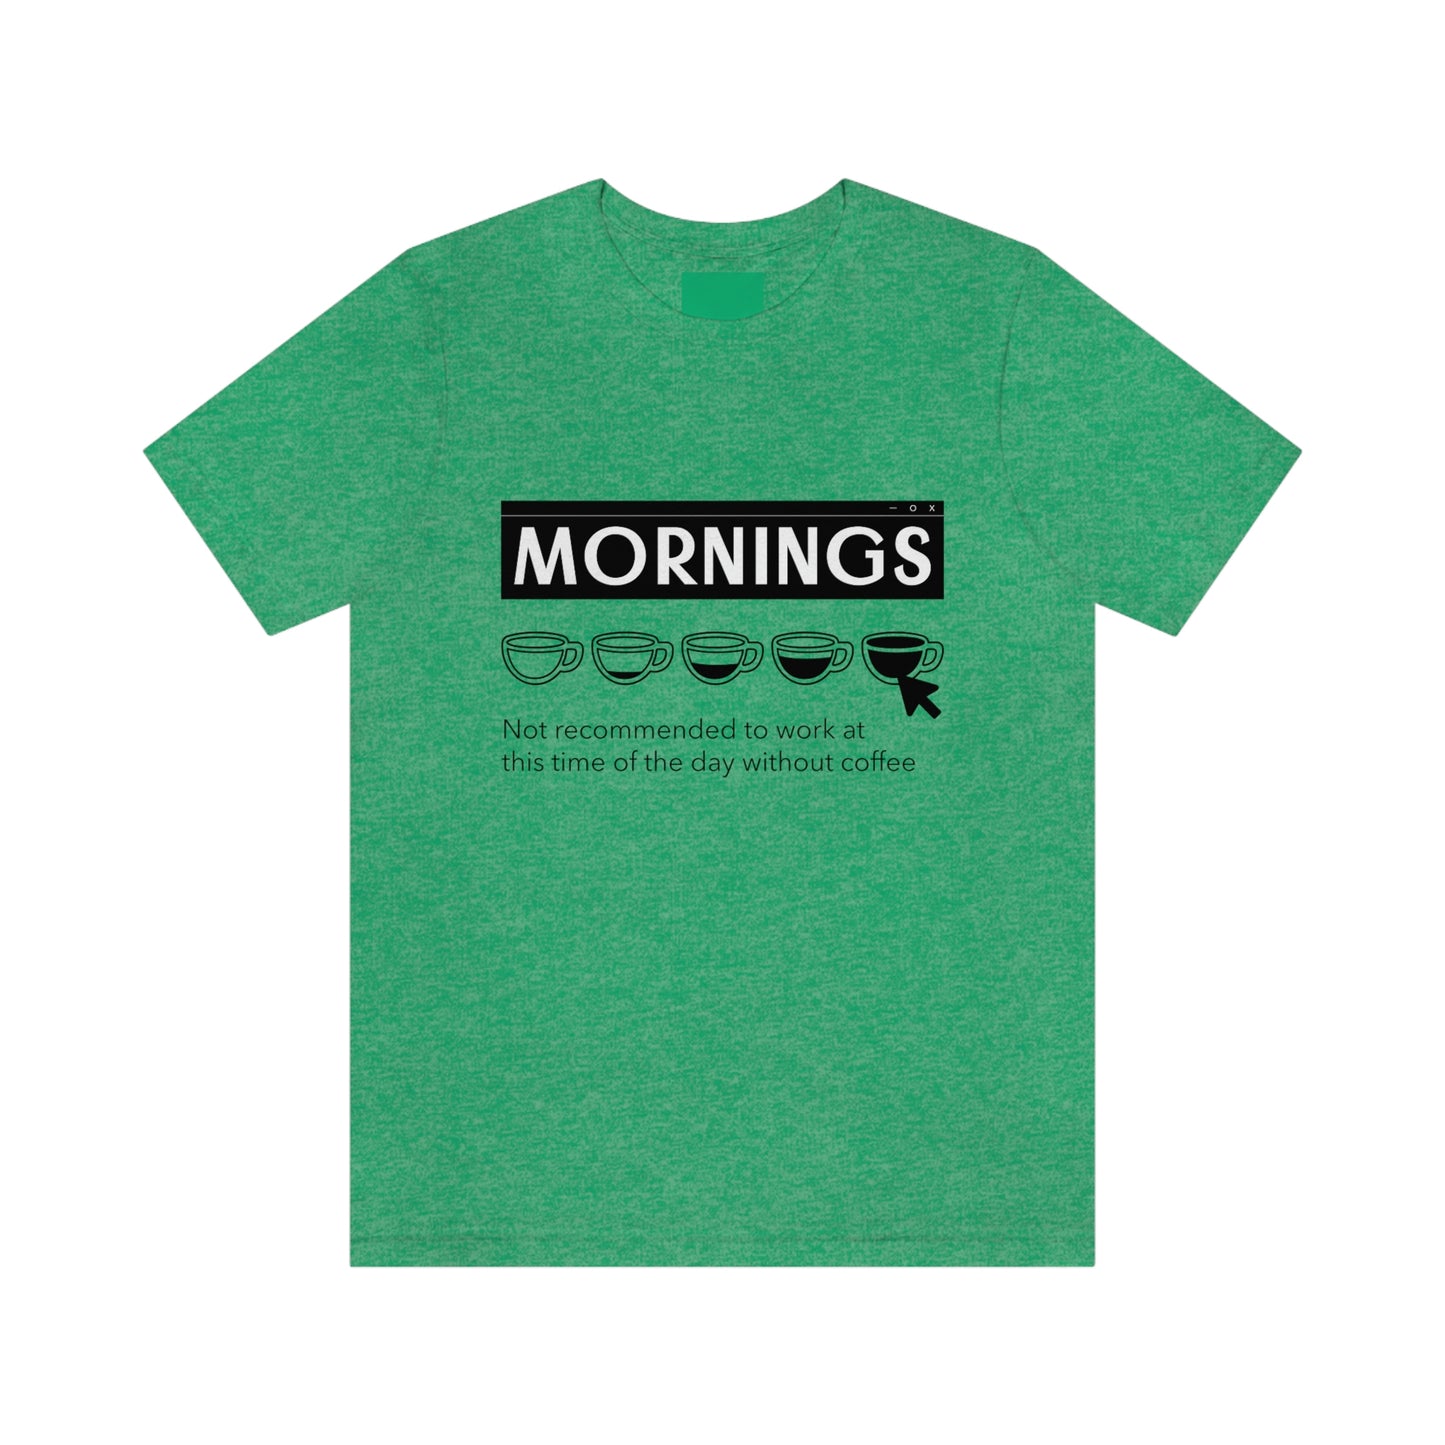 Mornings - Unisex T-Shirt